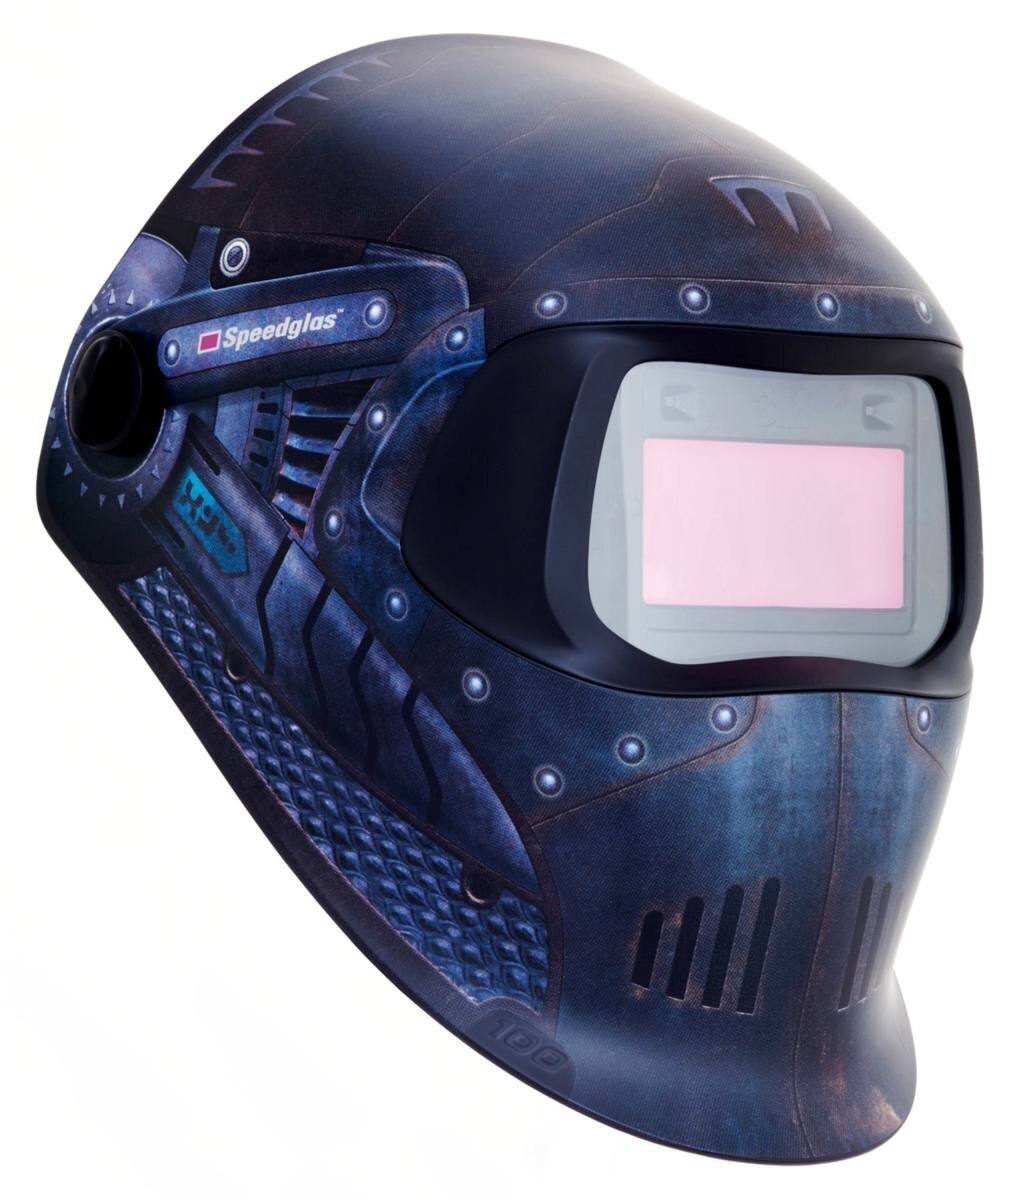 3M Speedglas máscara de soldadura 100V Máscara de soldadura automática DIN 8-12 Mig "Trojan Warrior" #751620